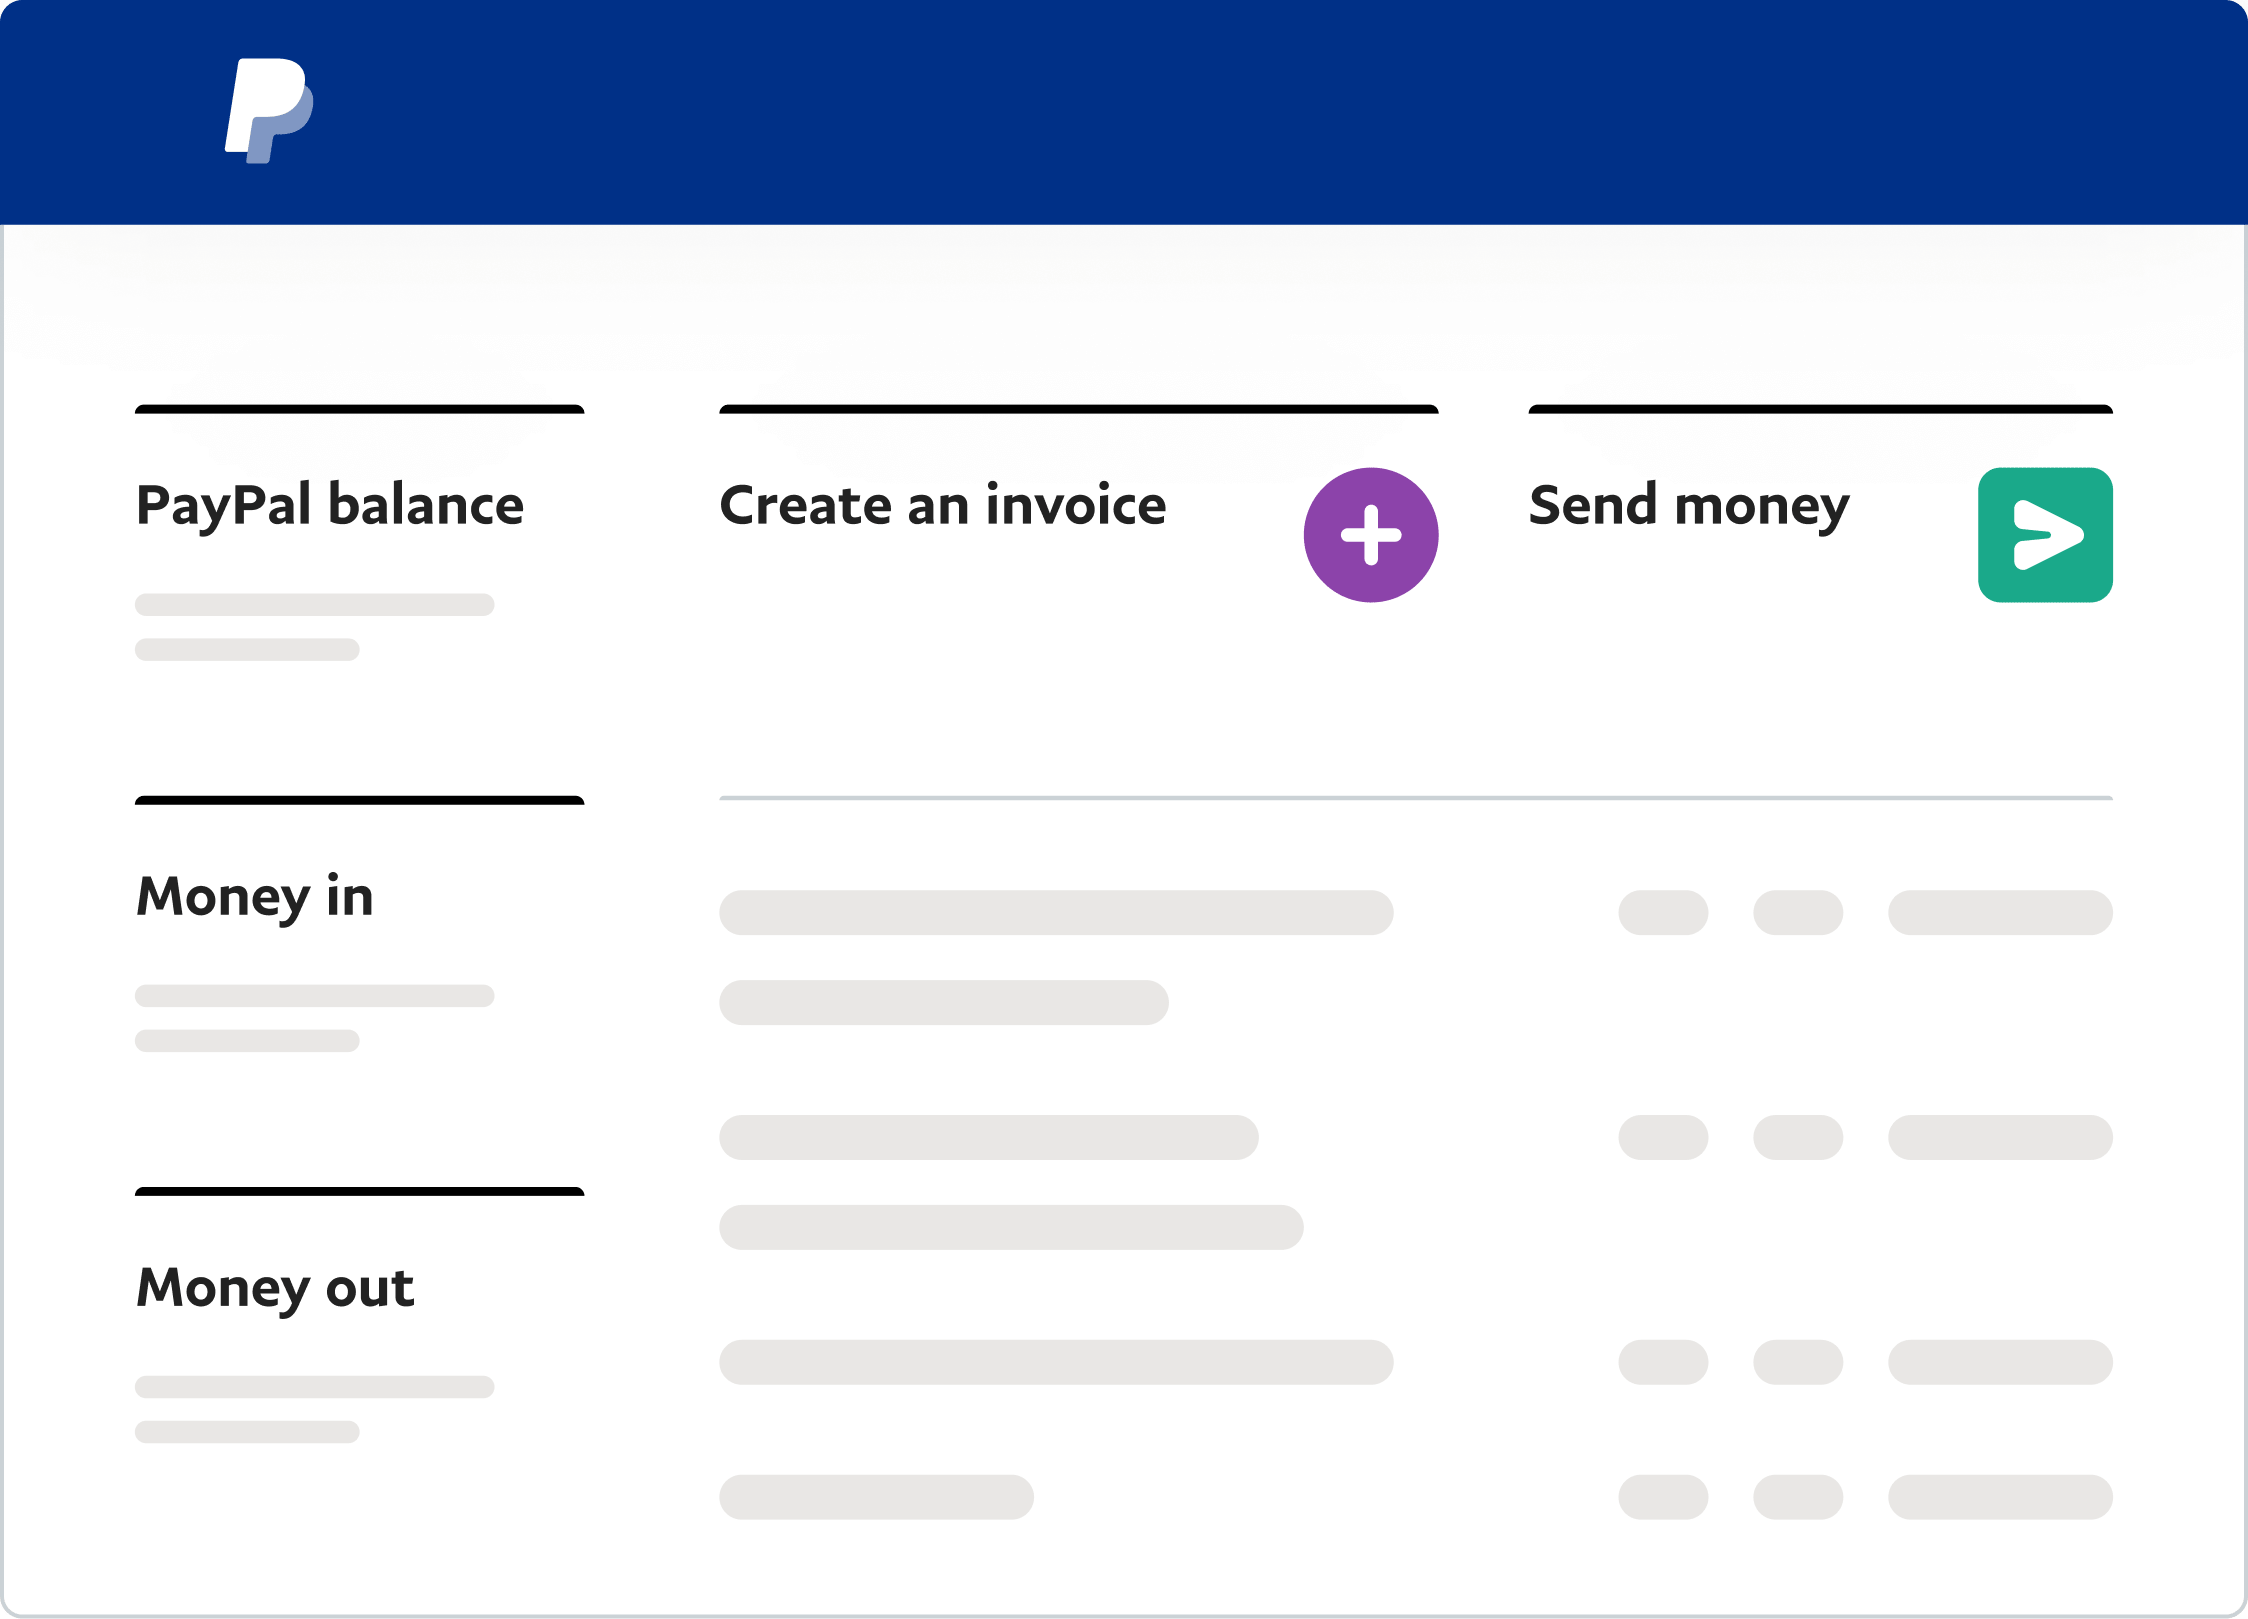 แดชบอร์ด PayPal Business สีขาวที่เสนอตัวเลือก เช่น การสร้างใบแจ้งหนี้และการชำระเงิน